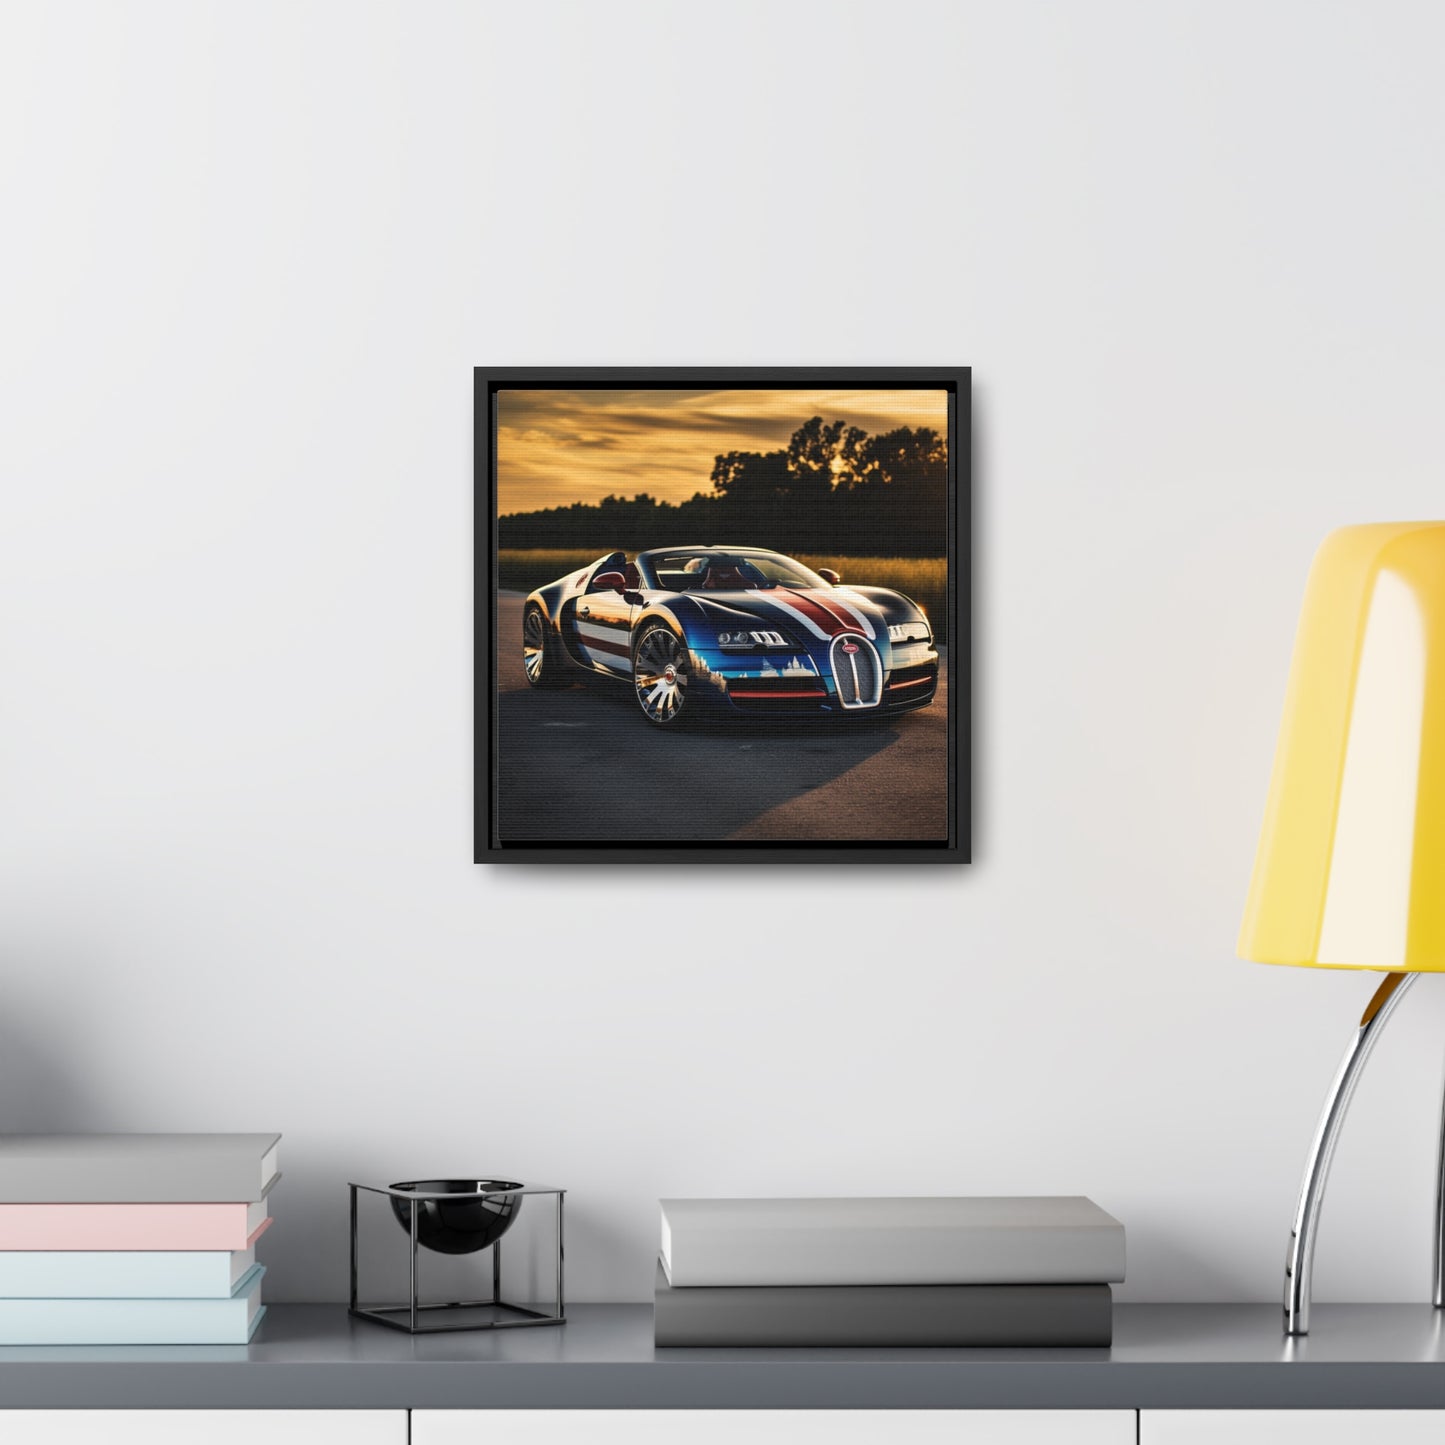 Gallery Canvas Wraps, Square Frame Bugatti Flag American 3